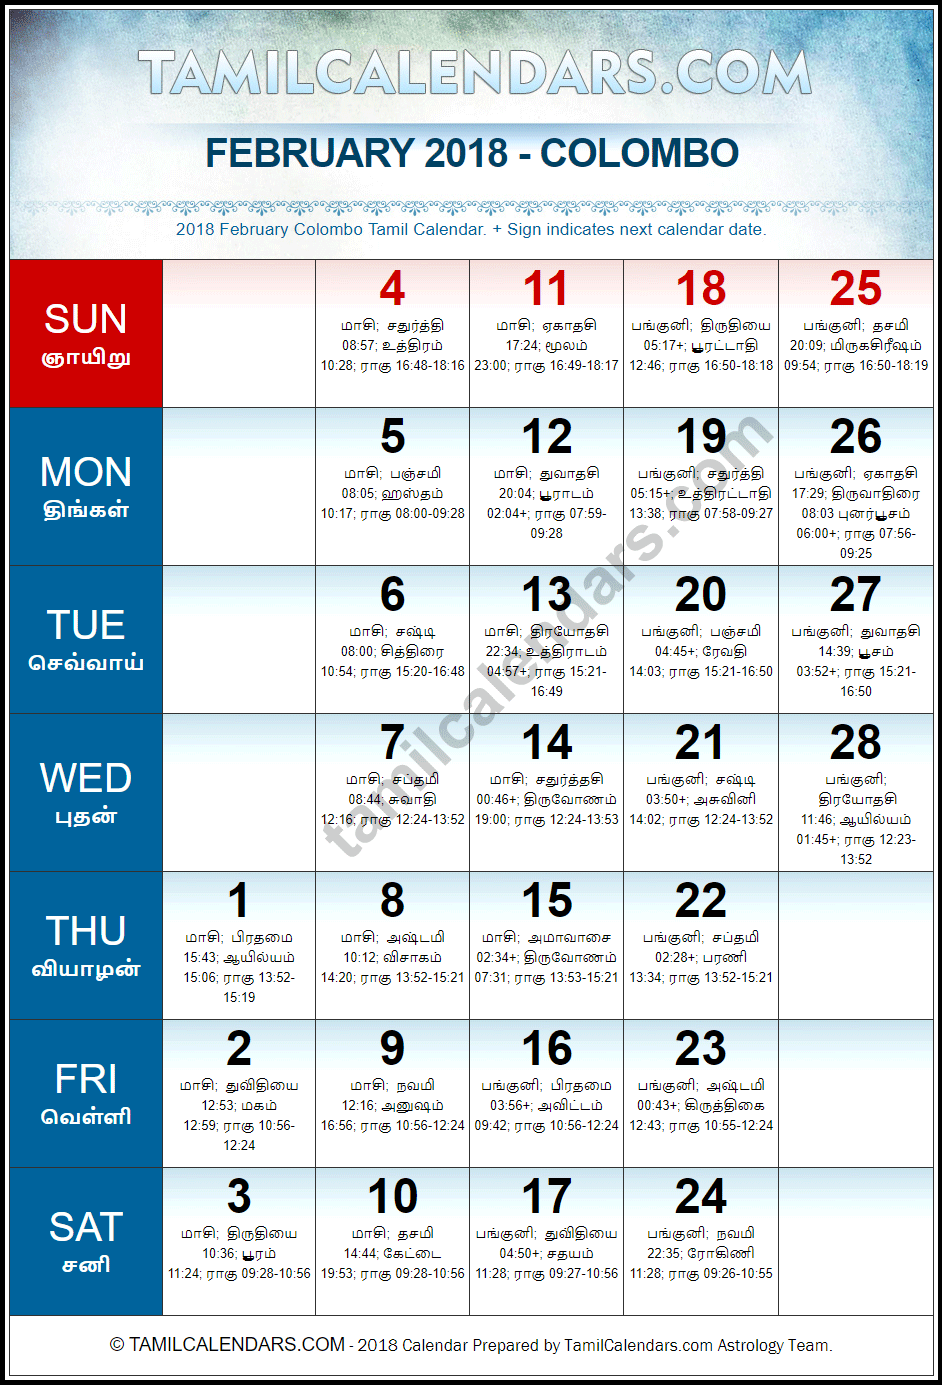 February 2018 Tamil Calendar for Sri Lanka (Colombo)